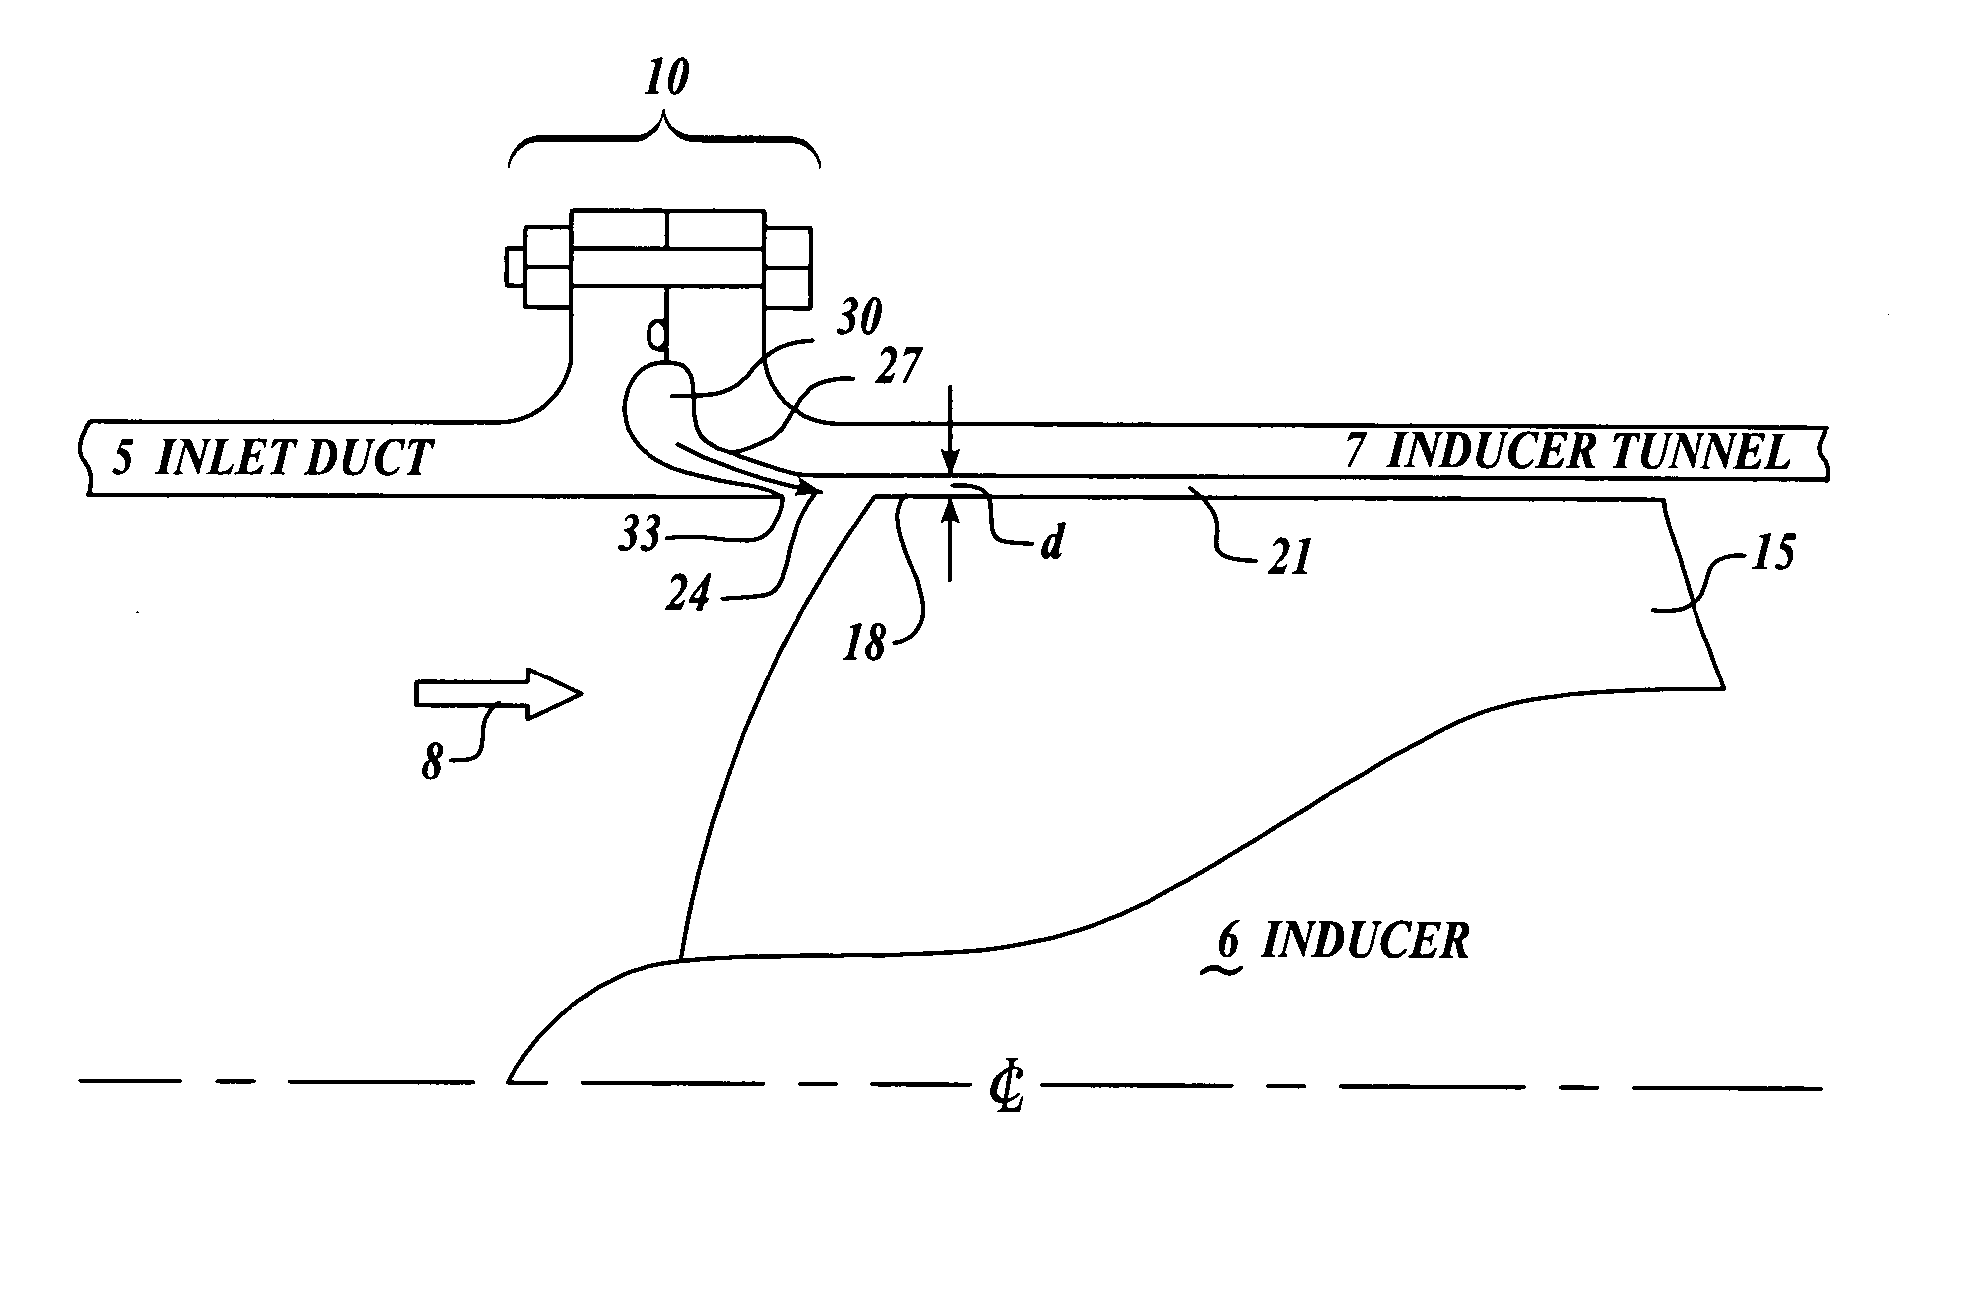 Inducer tip vortex suppressor